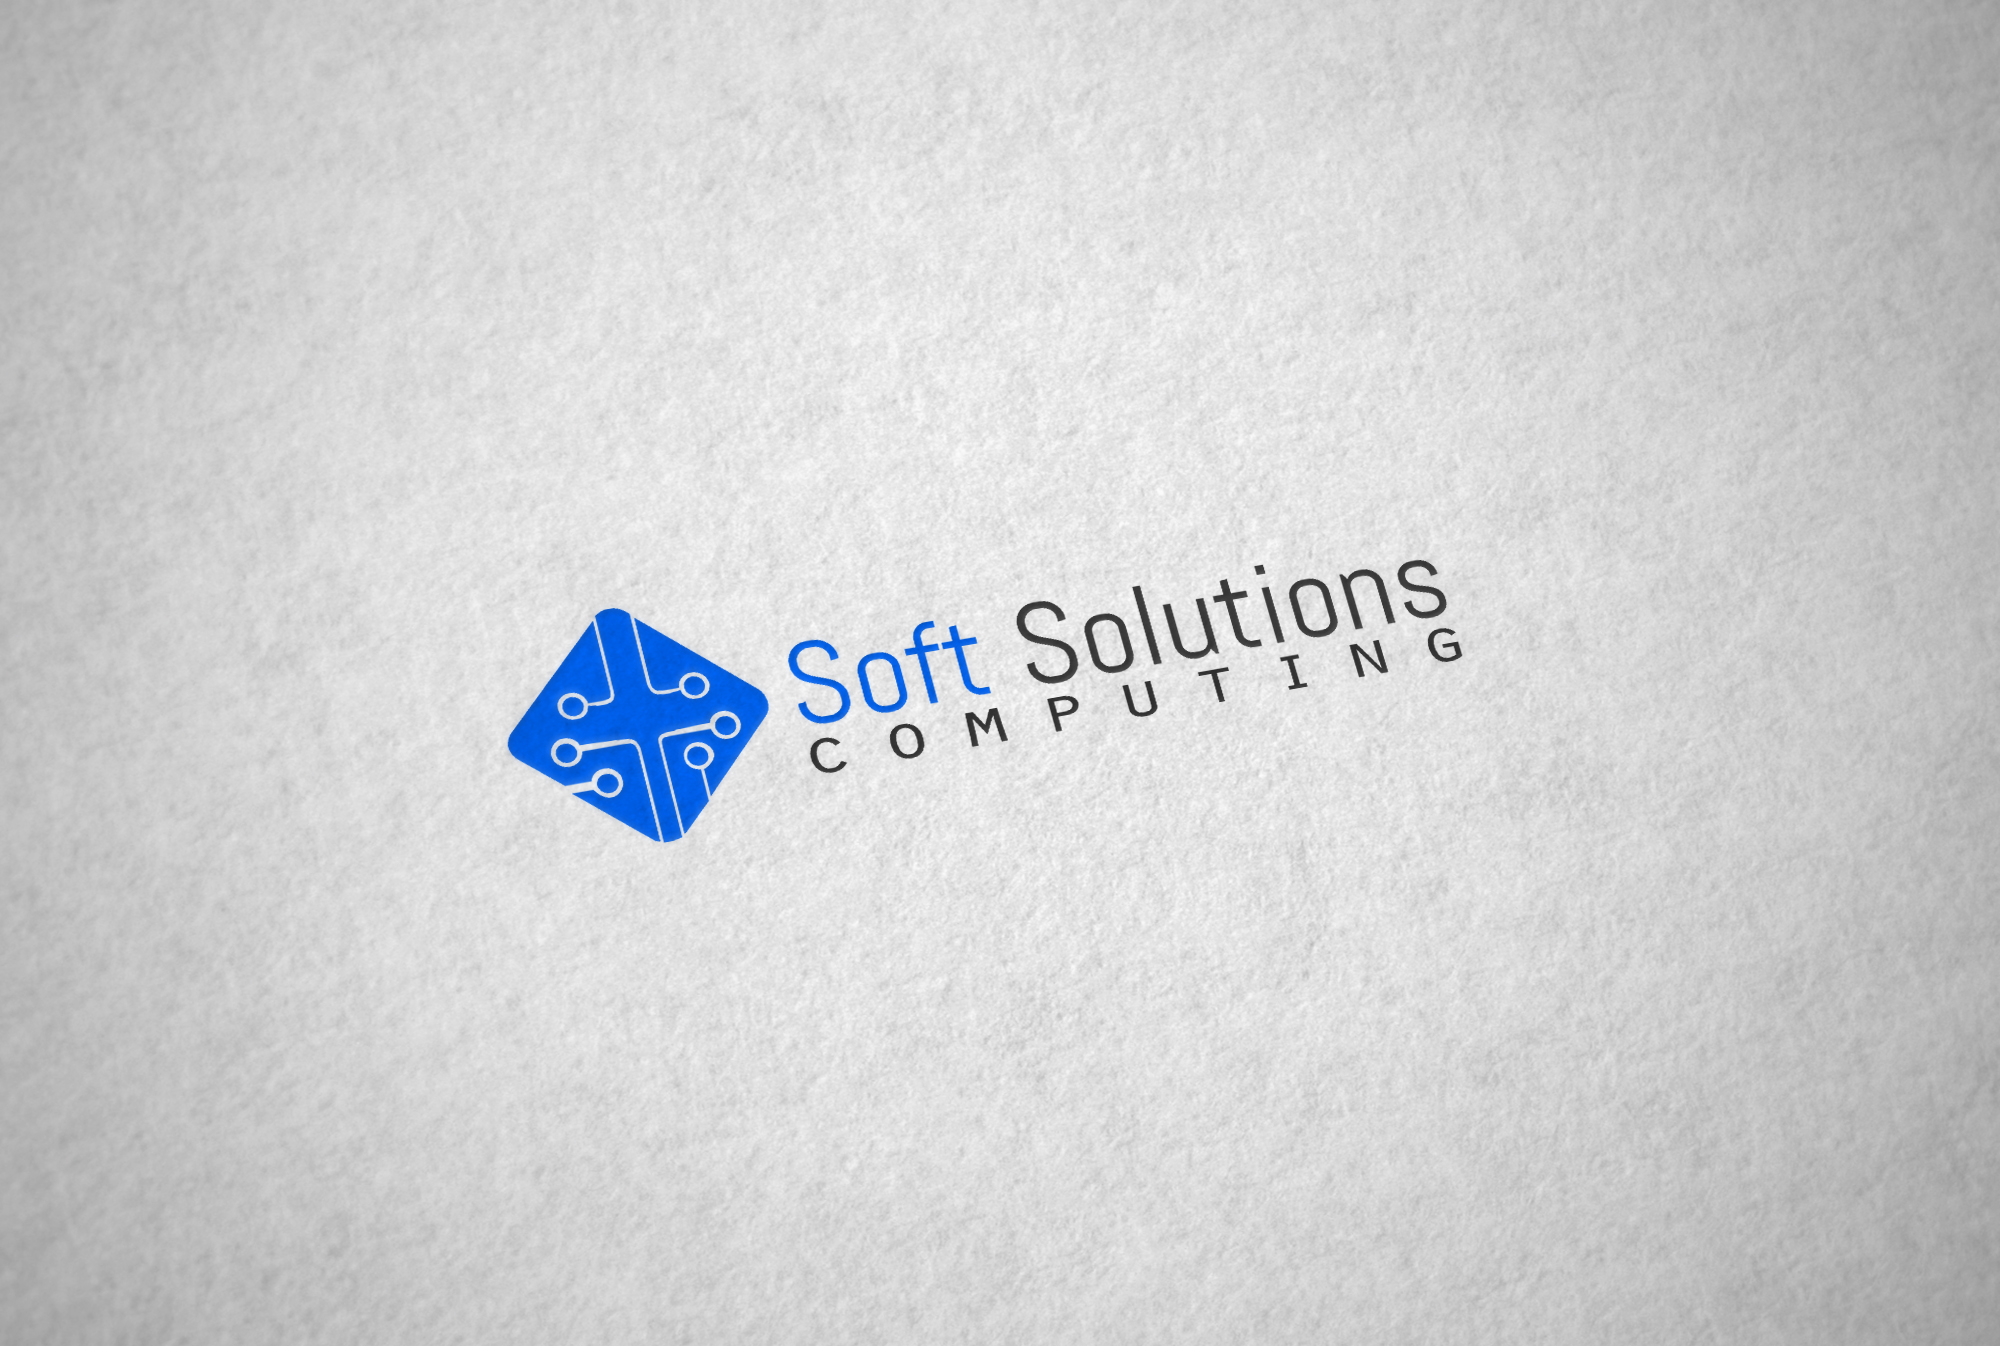 Cabinet de conseil en informatique - Soft Solutions